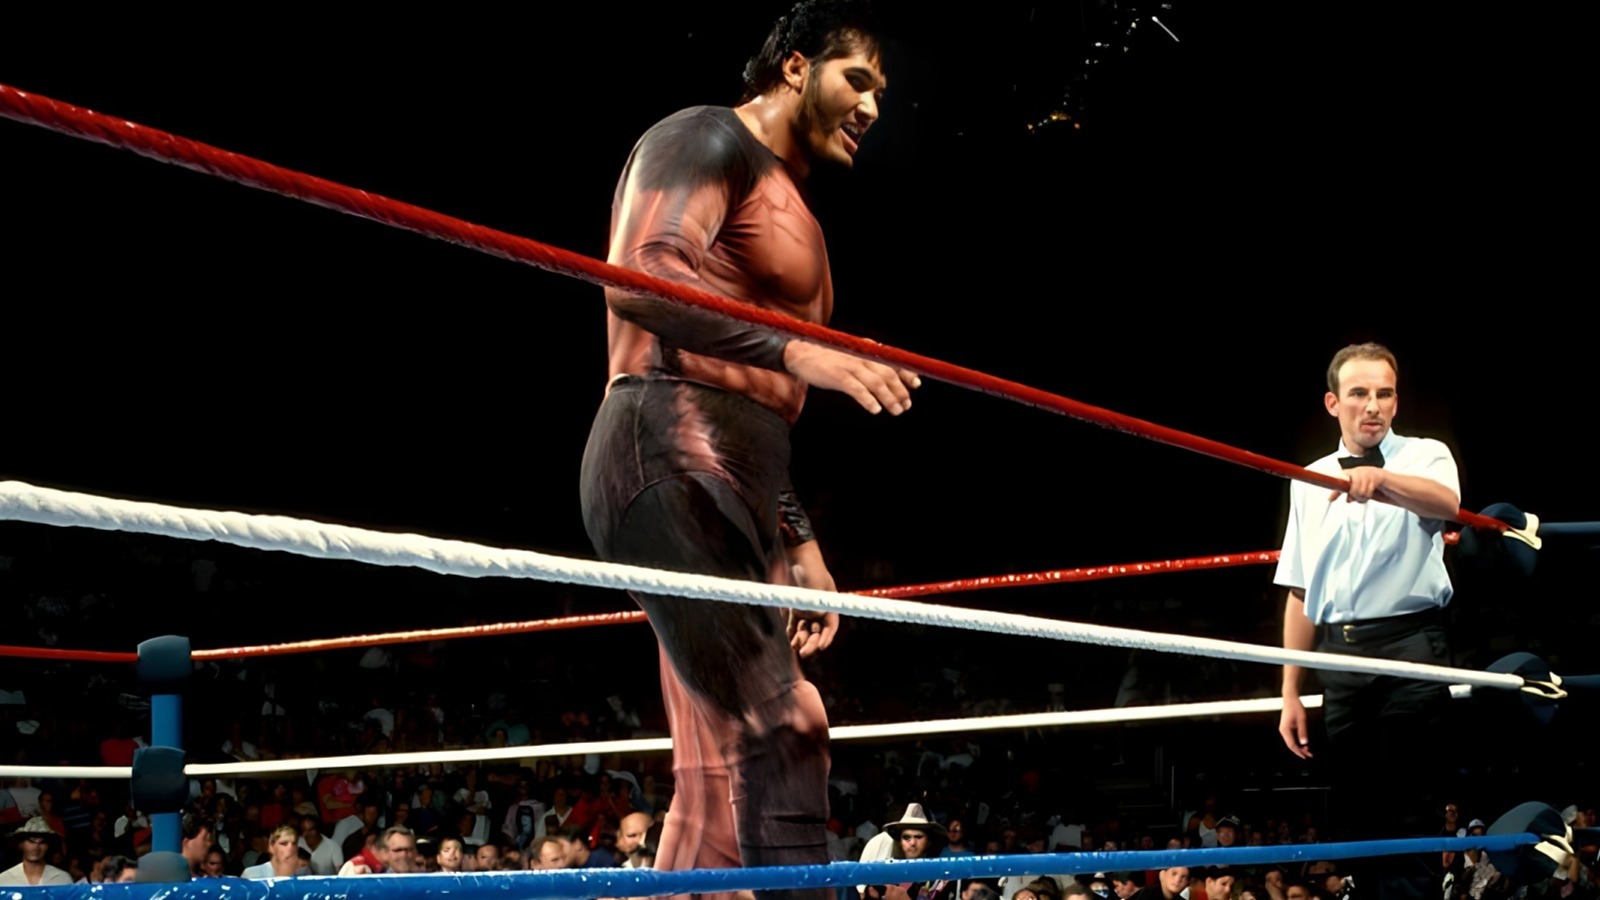 Jim Ross, miembro de WWE HOF, habla sobre El Gigante y cómo reaccionaron los fanáticos ante él